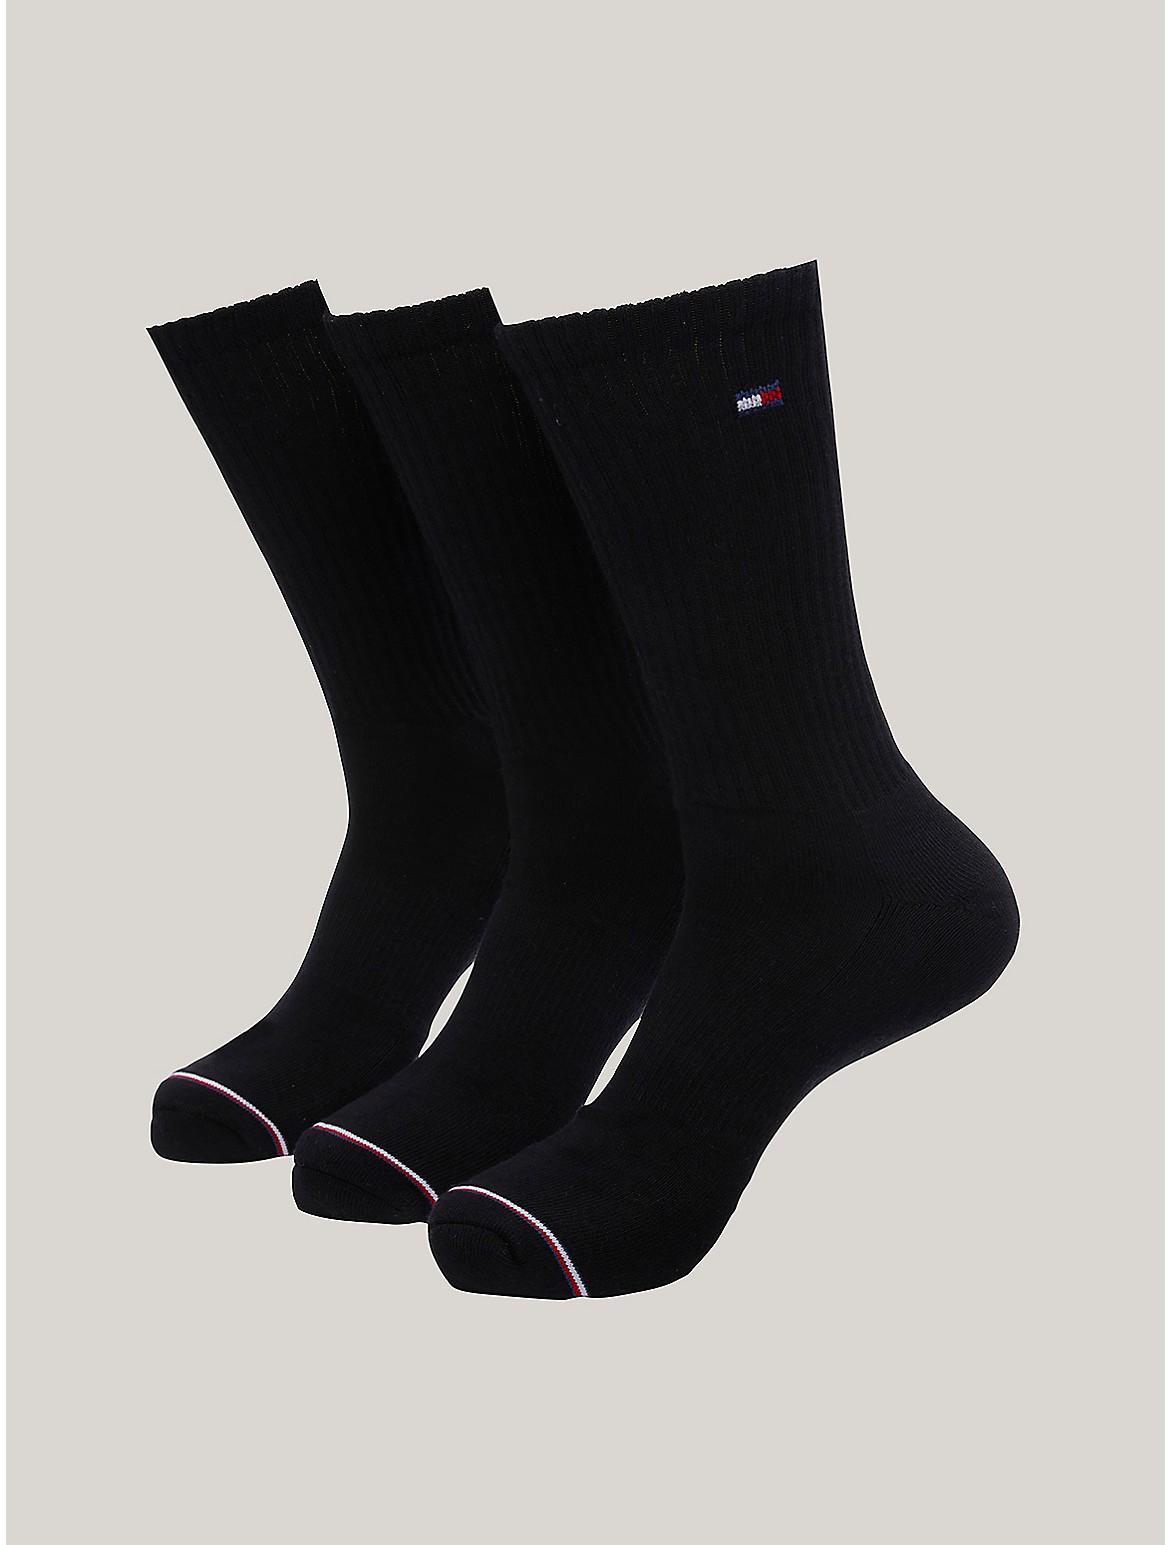 Tommy Hilfiger Men's Athletic Crew Socks 3-Pack - Black